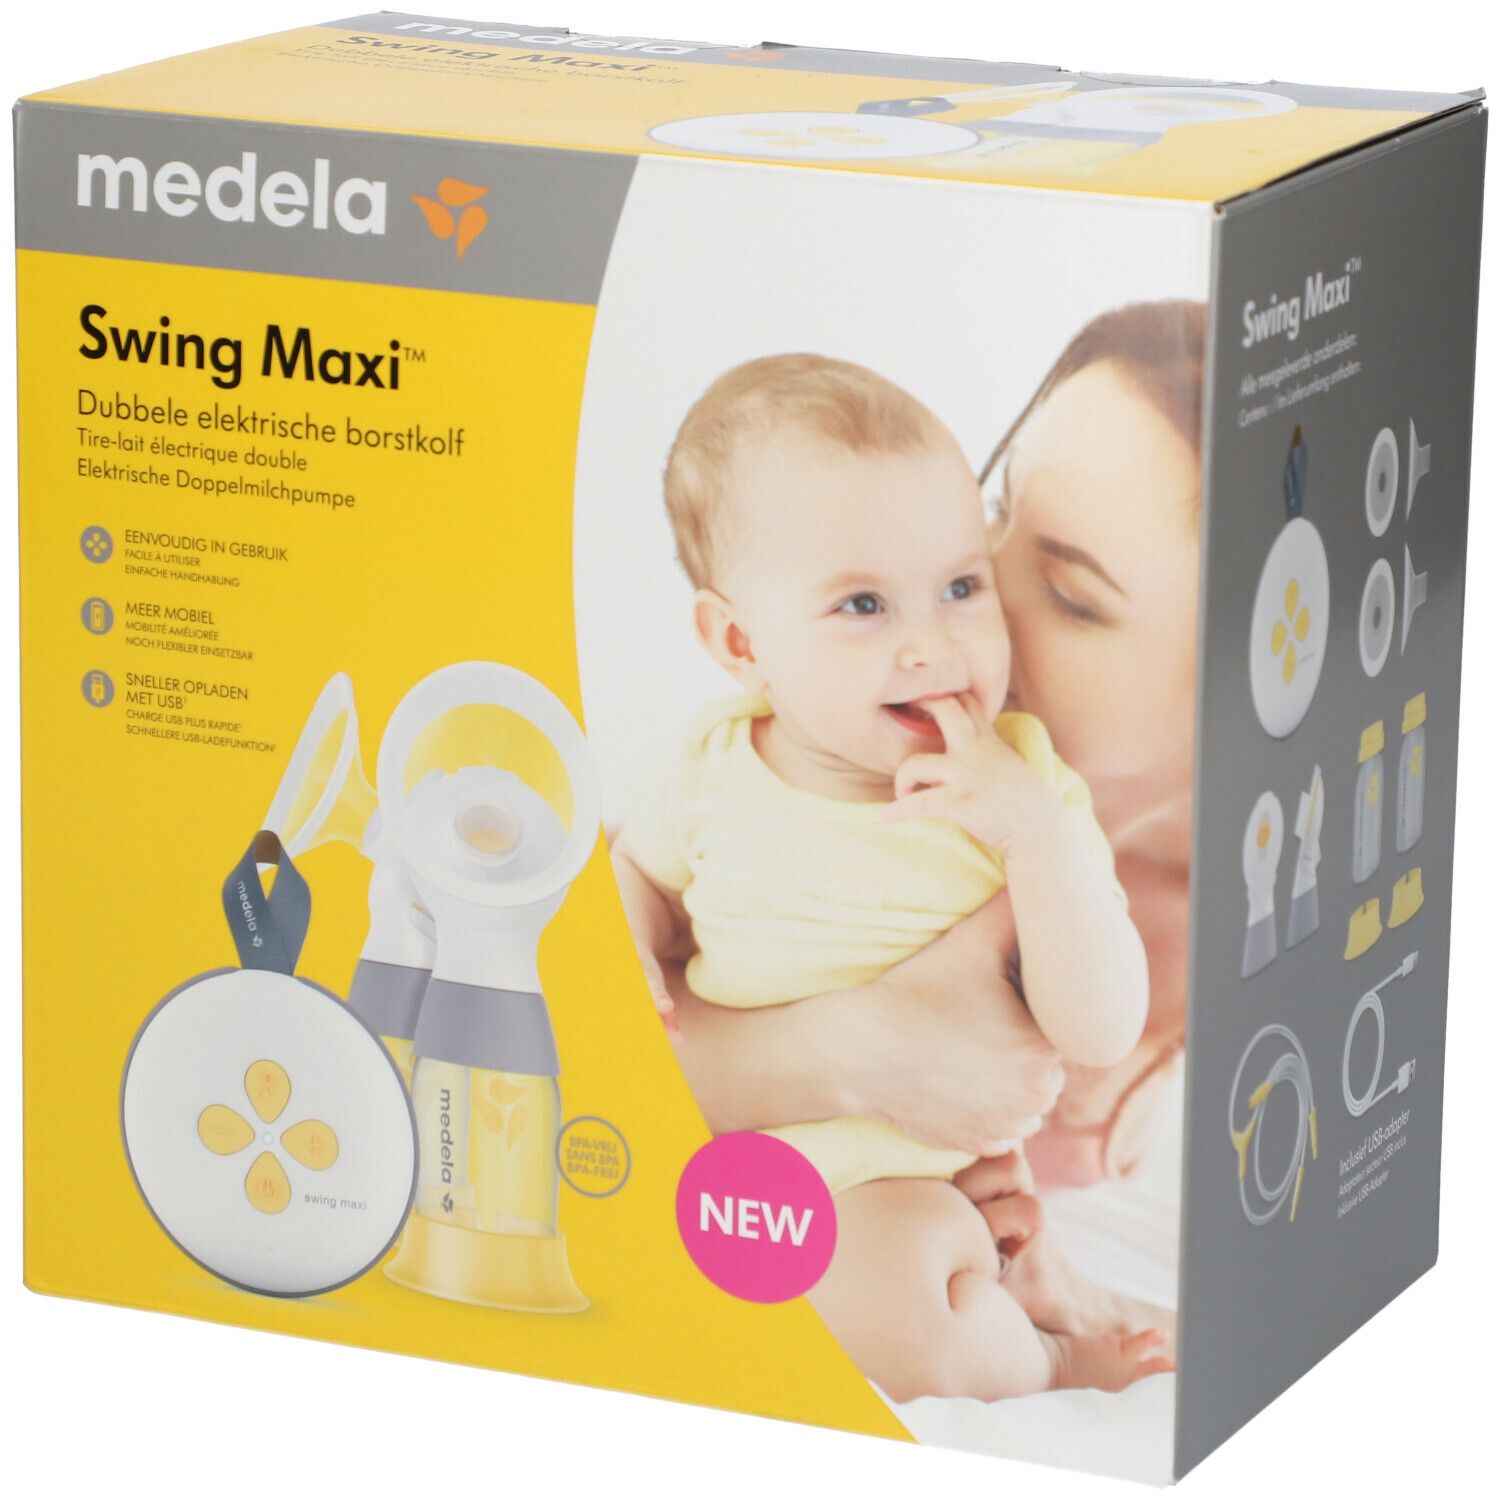 medela Swing Maxi™ Tire-lait électrique double